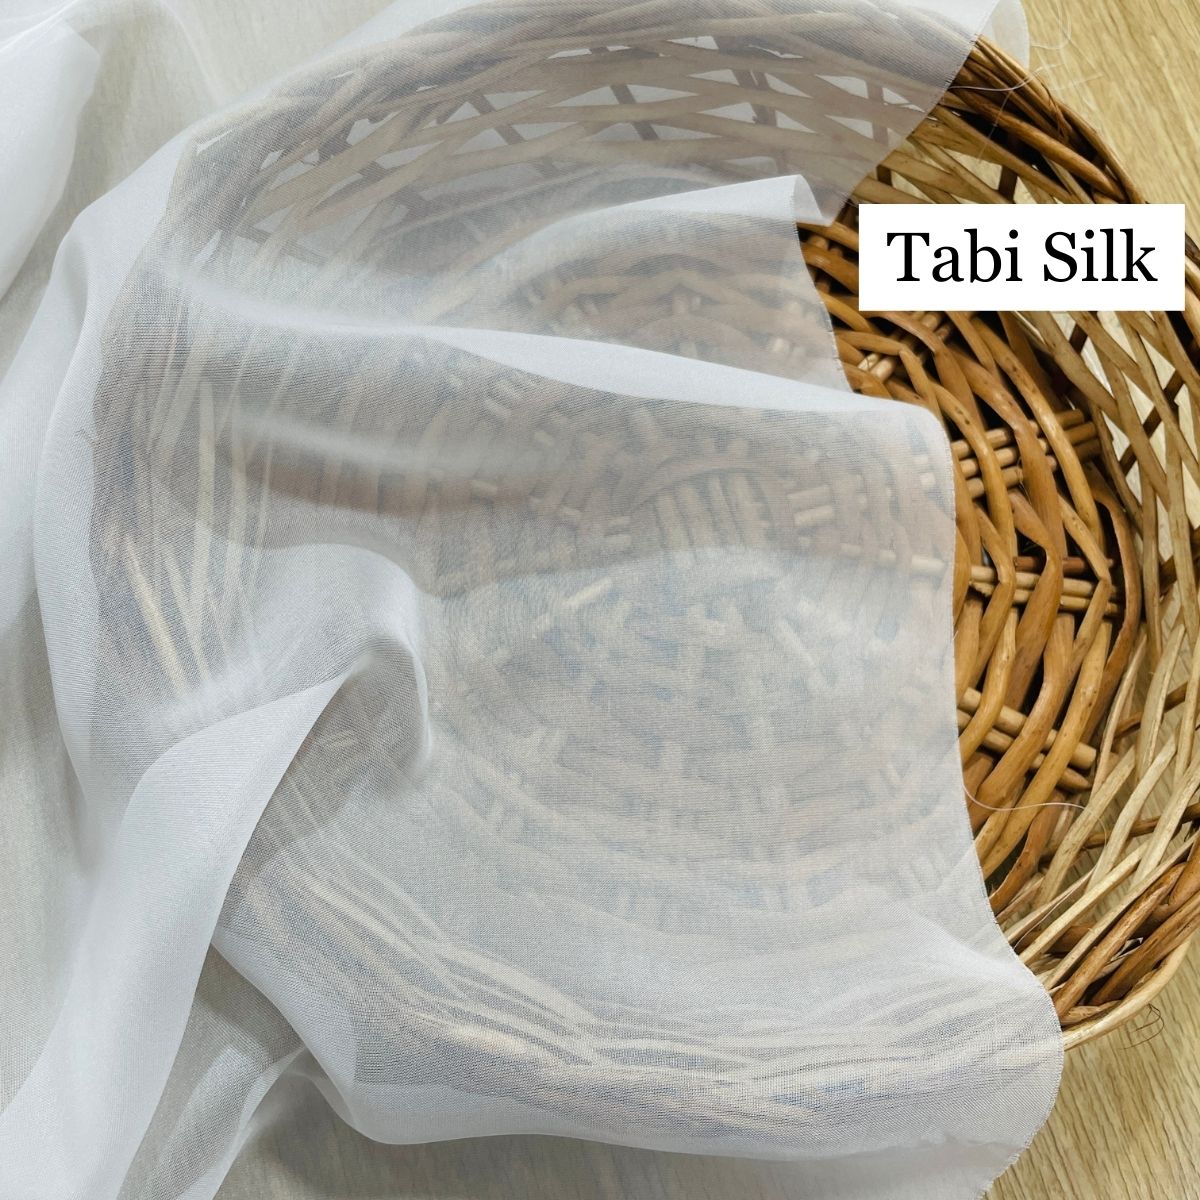 Tabi Silk